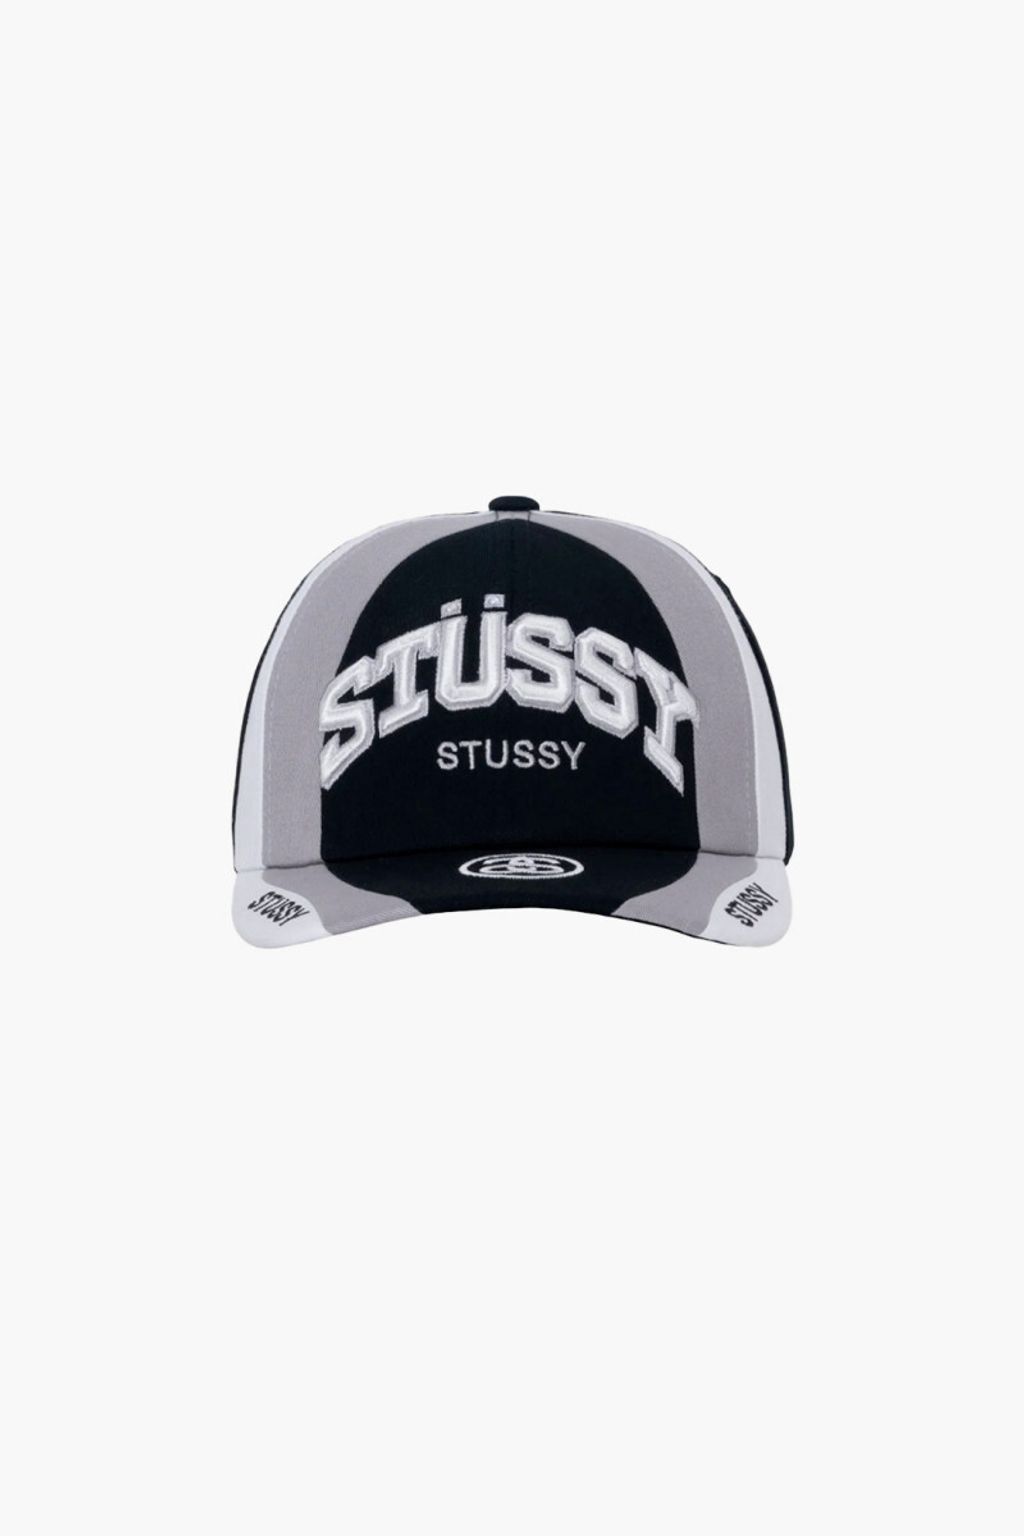 stussy-souvenir-low-pro-cap-black (1)